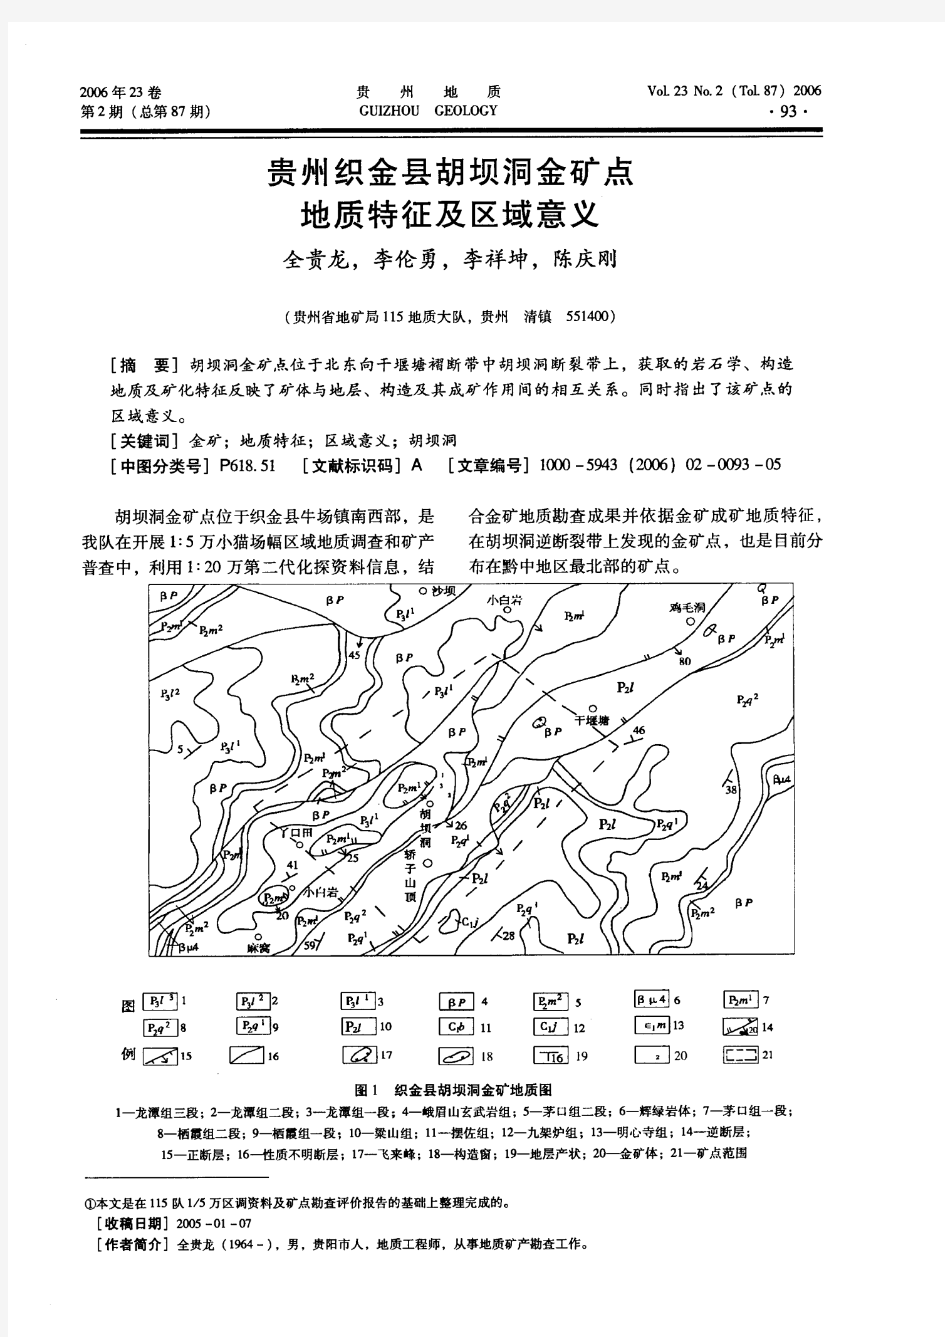 贵州织金县胡坝洞金矿点地质特征及区域意义